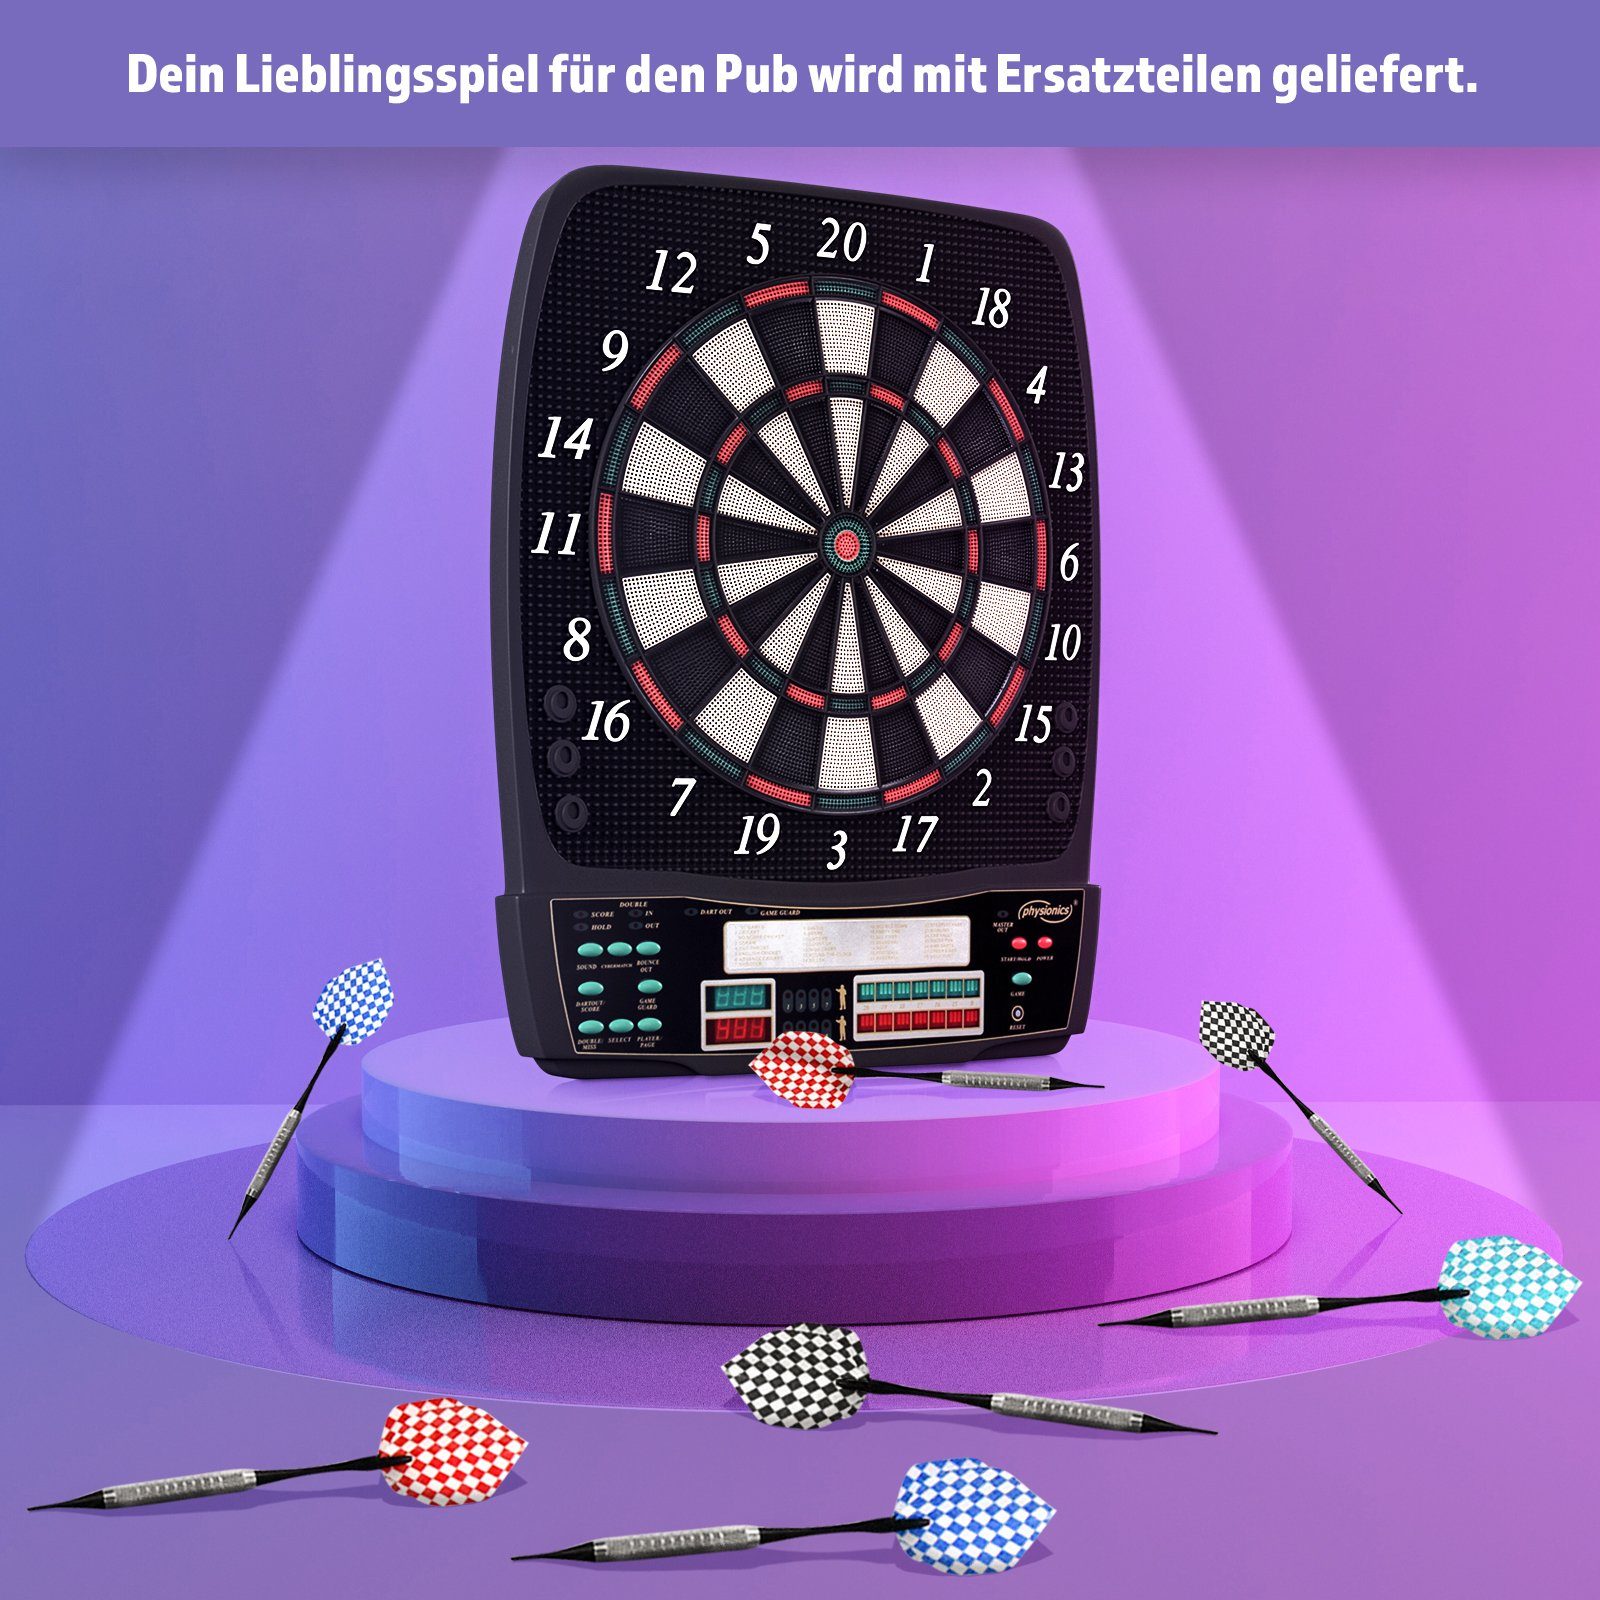 Soft Dart-Scheibe 12 Profi Modell-quadratischeForm/ohneTüren E-Dartboard Physionics Dartspiel Elektronisch Pfeile Dartscheibe